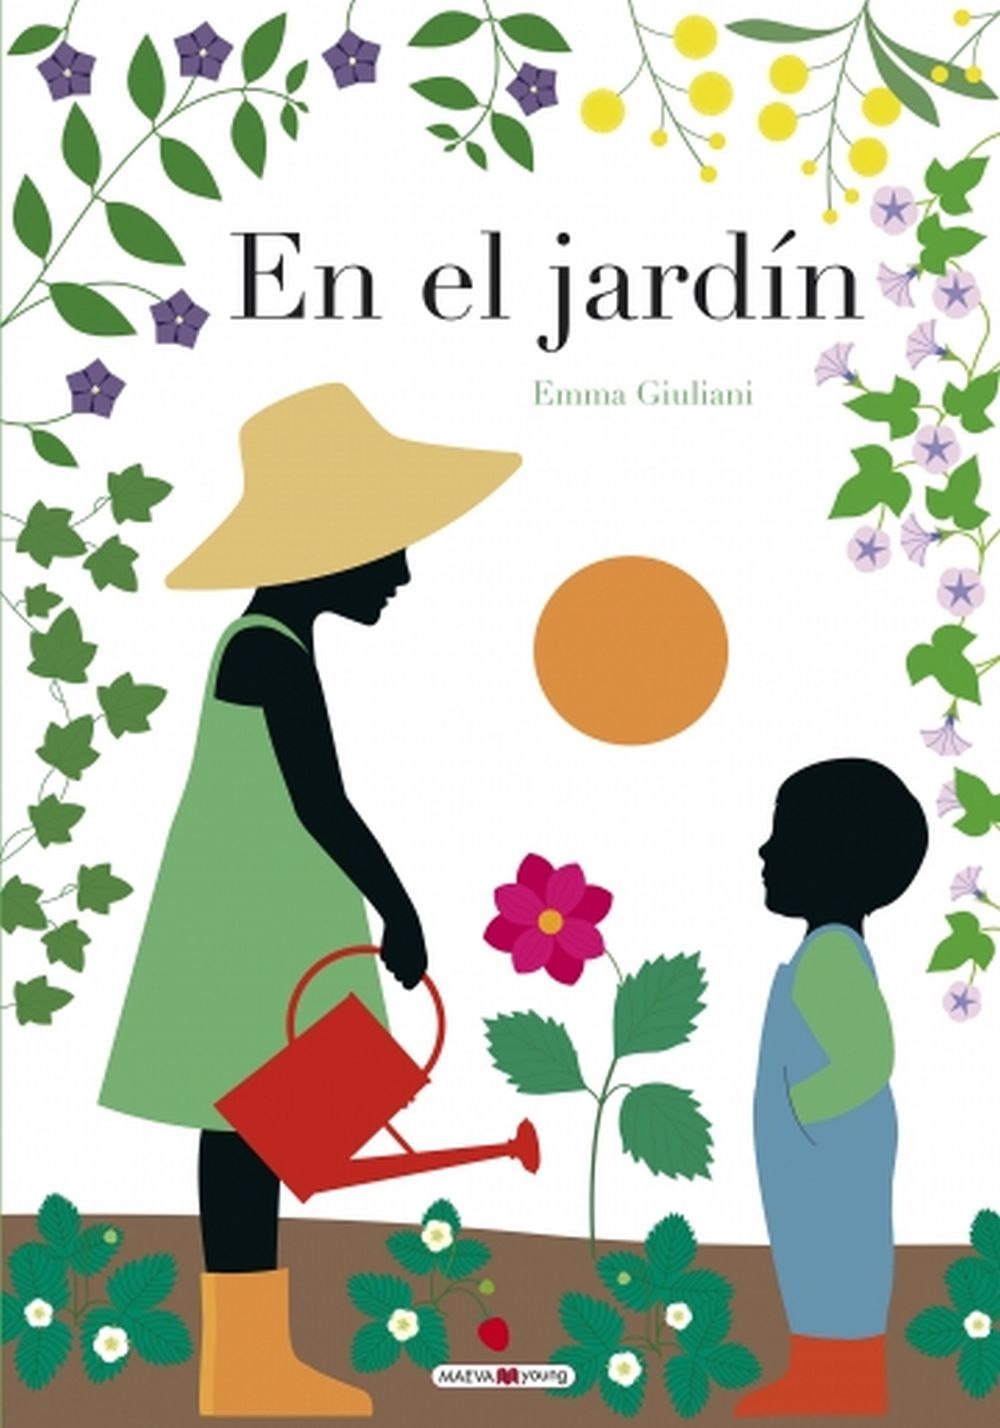 En el jardín, de Emma Giuliani